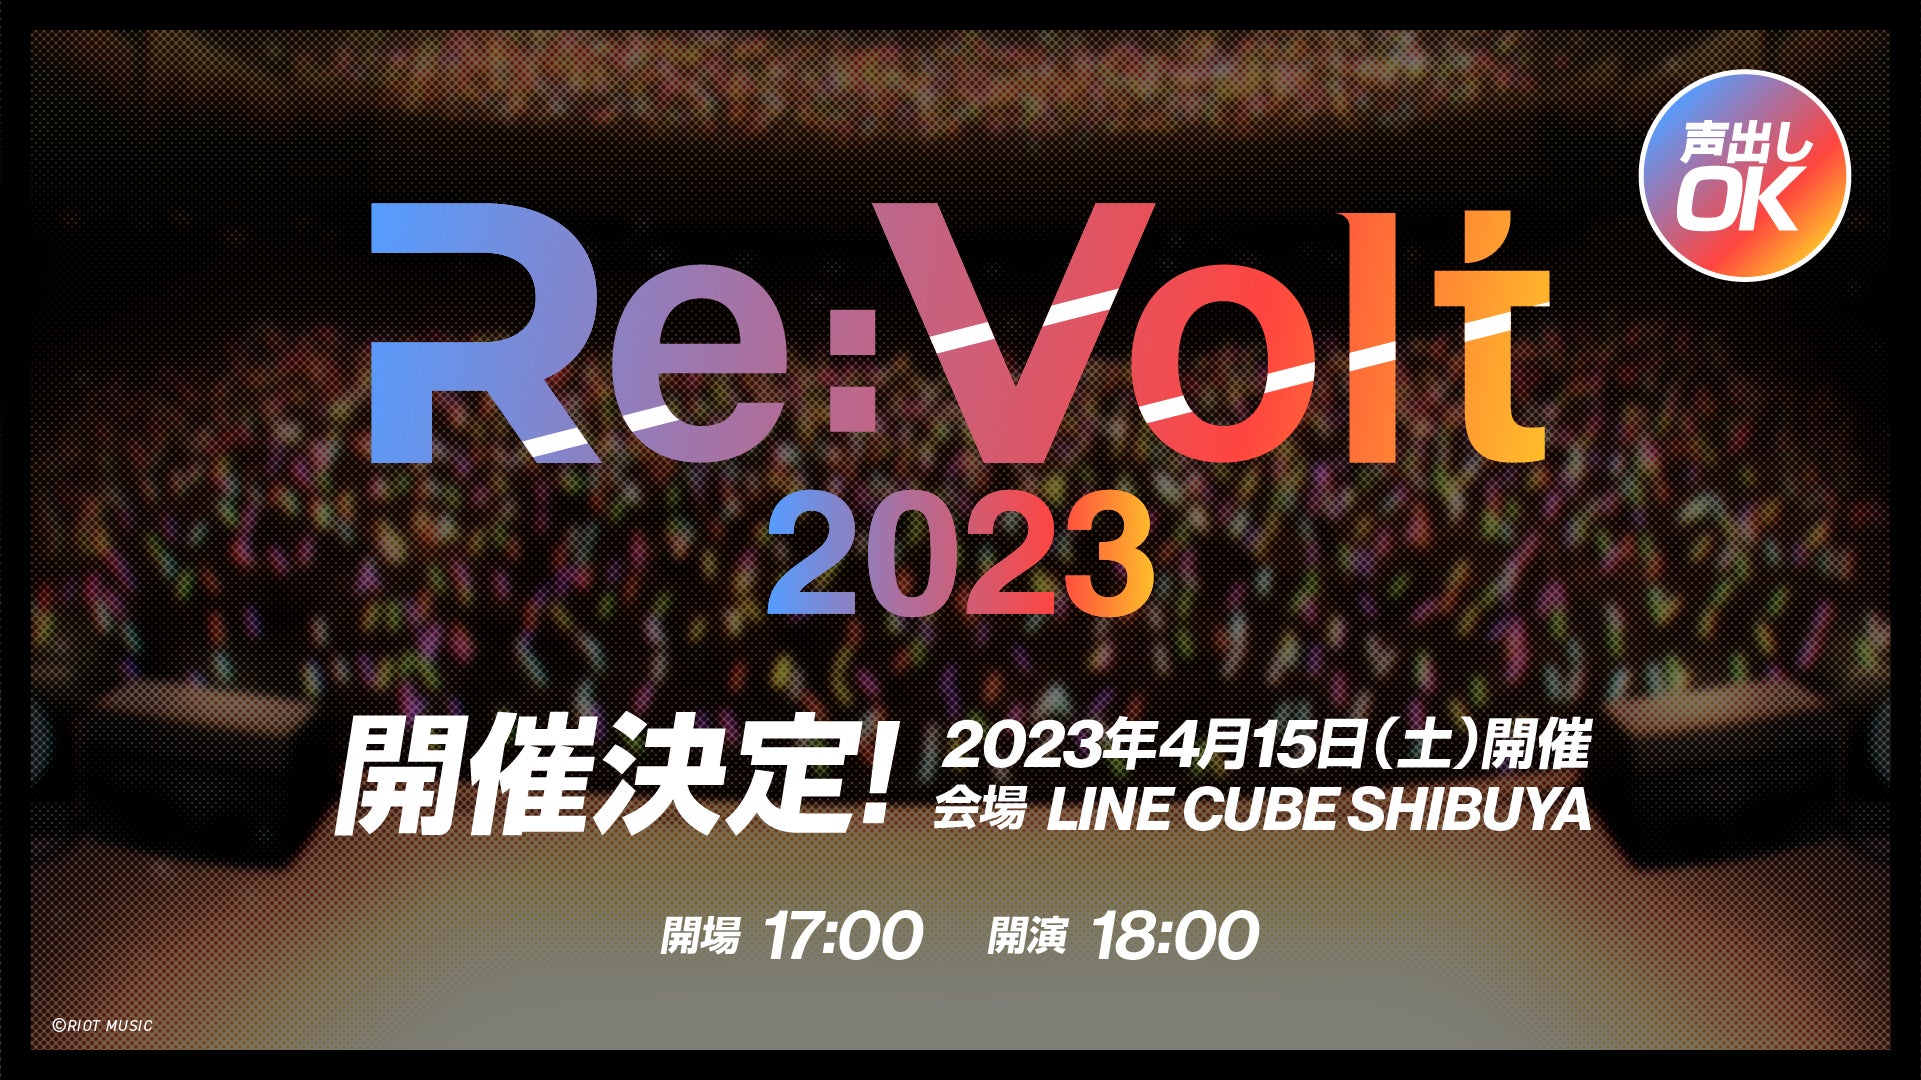 人気バーチャルアーティスト「道明寺ここあ」らが所属する「RIOT MUSIC」によるライブ「Re:Volt 2023」の開催が決定！